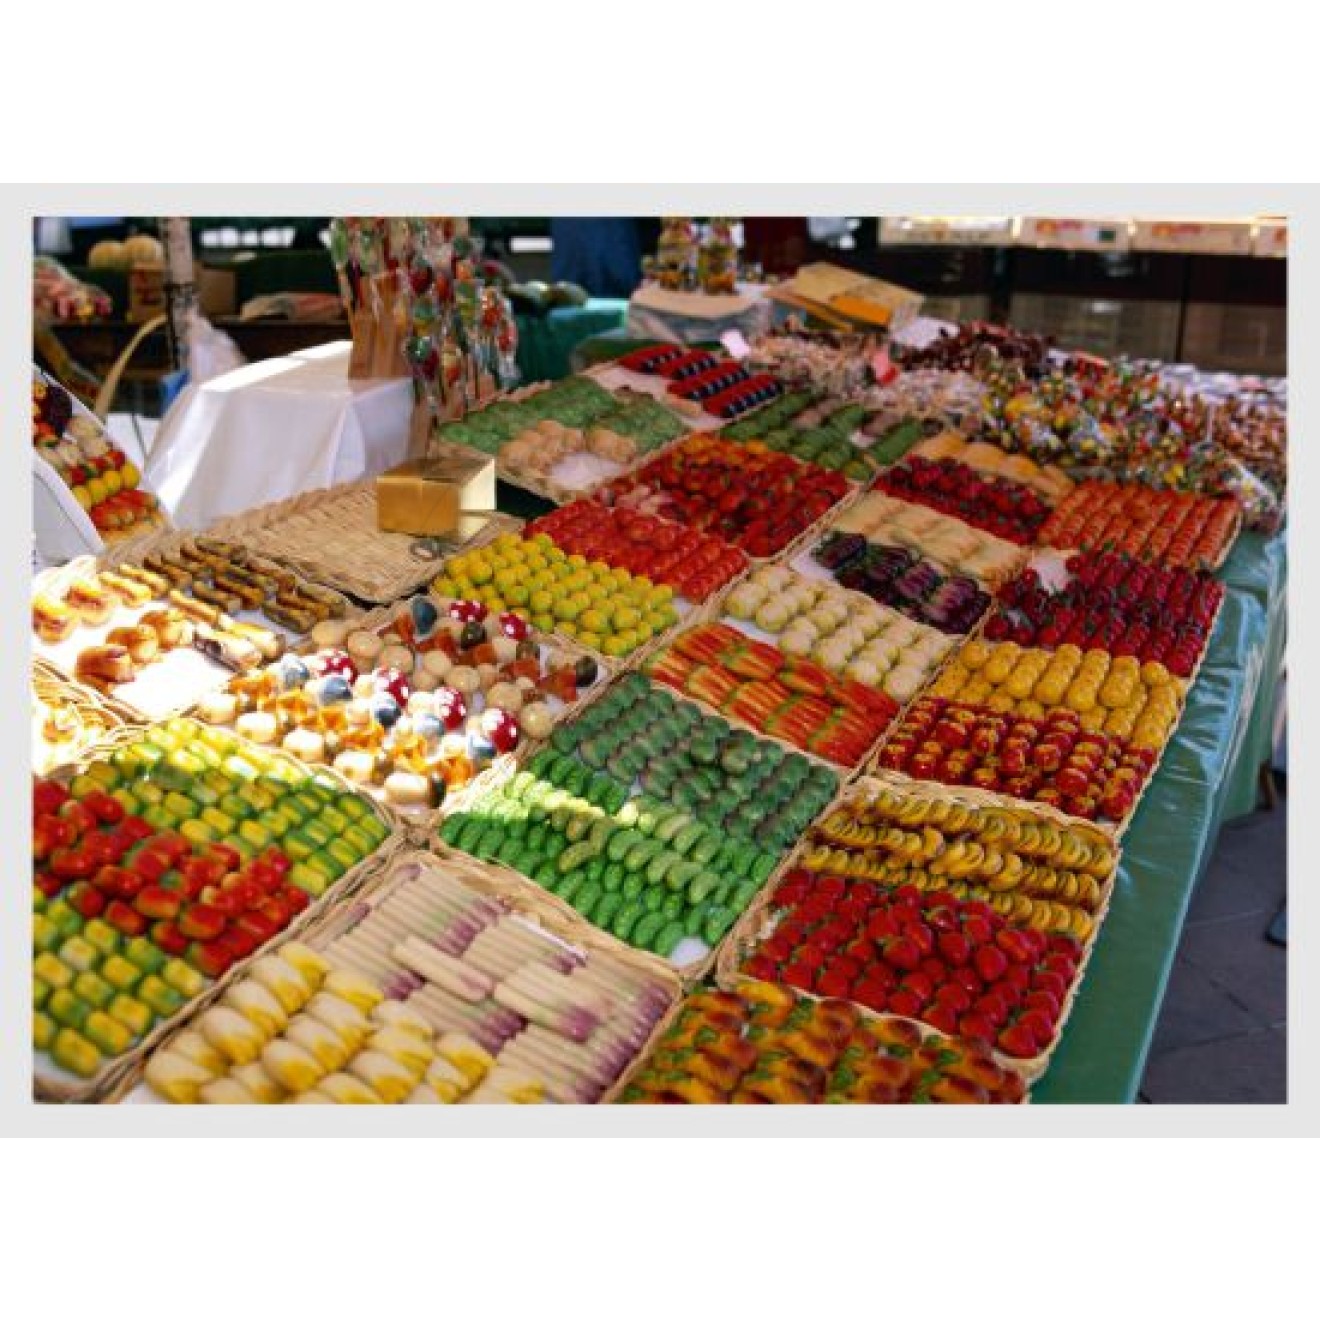 Marktstand mit Obst und Gemüse